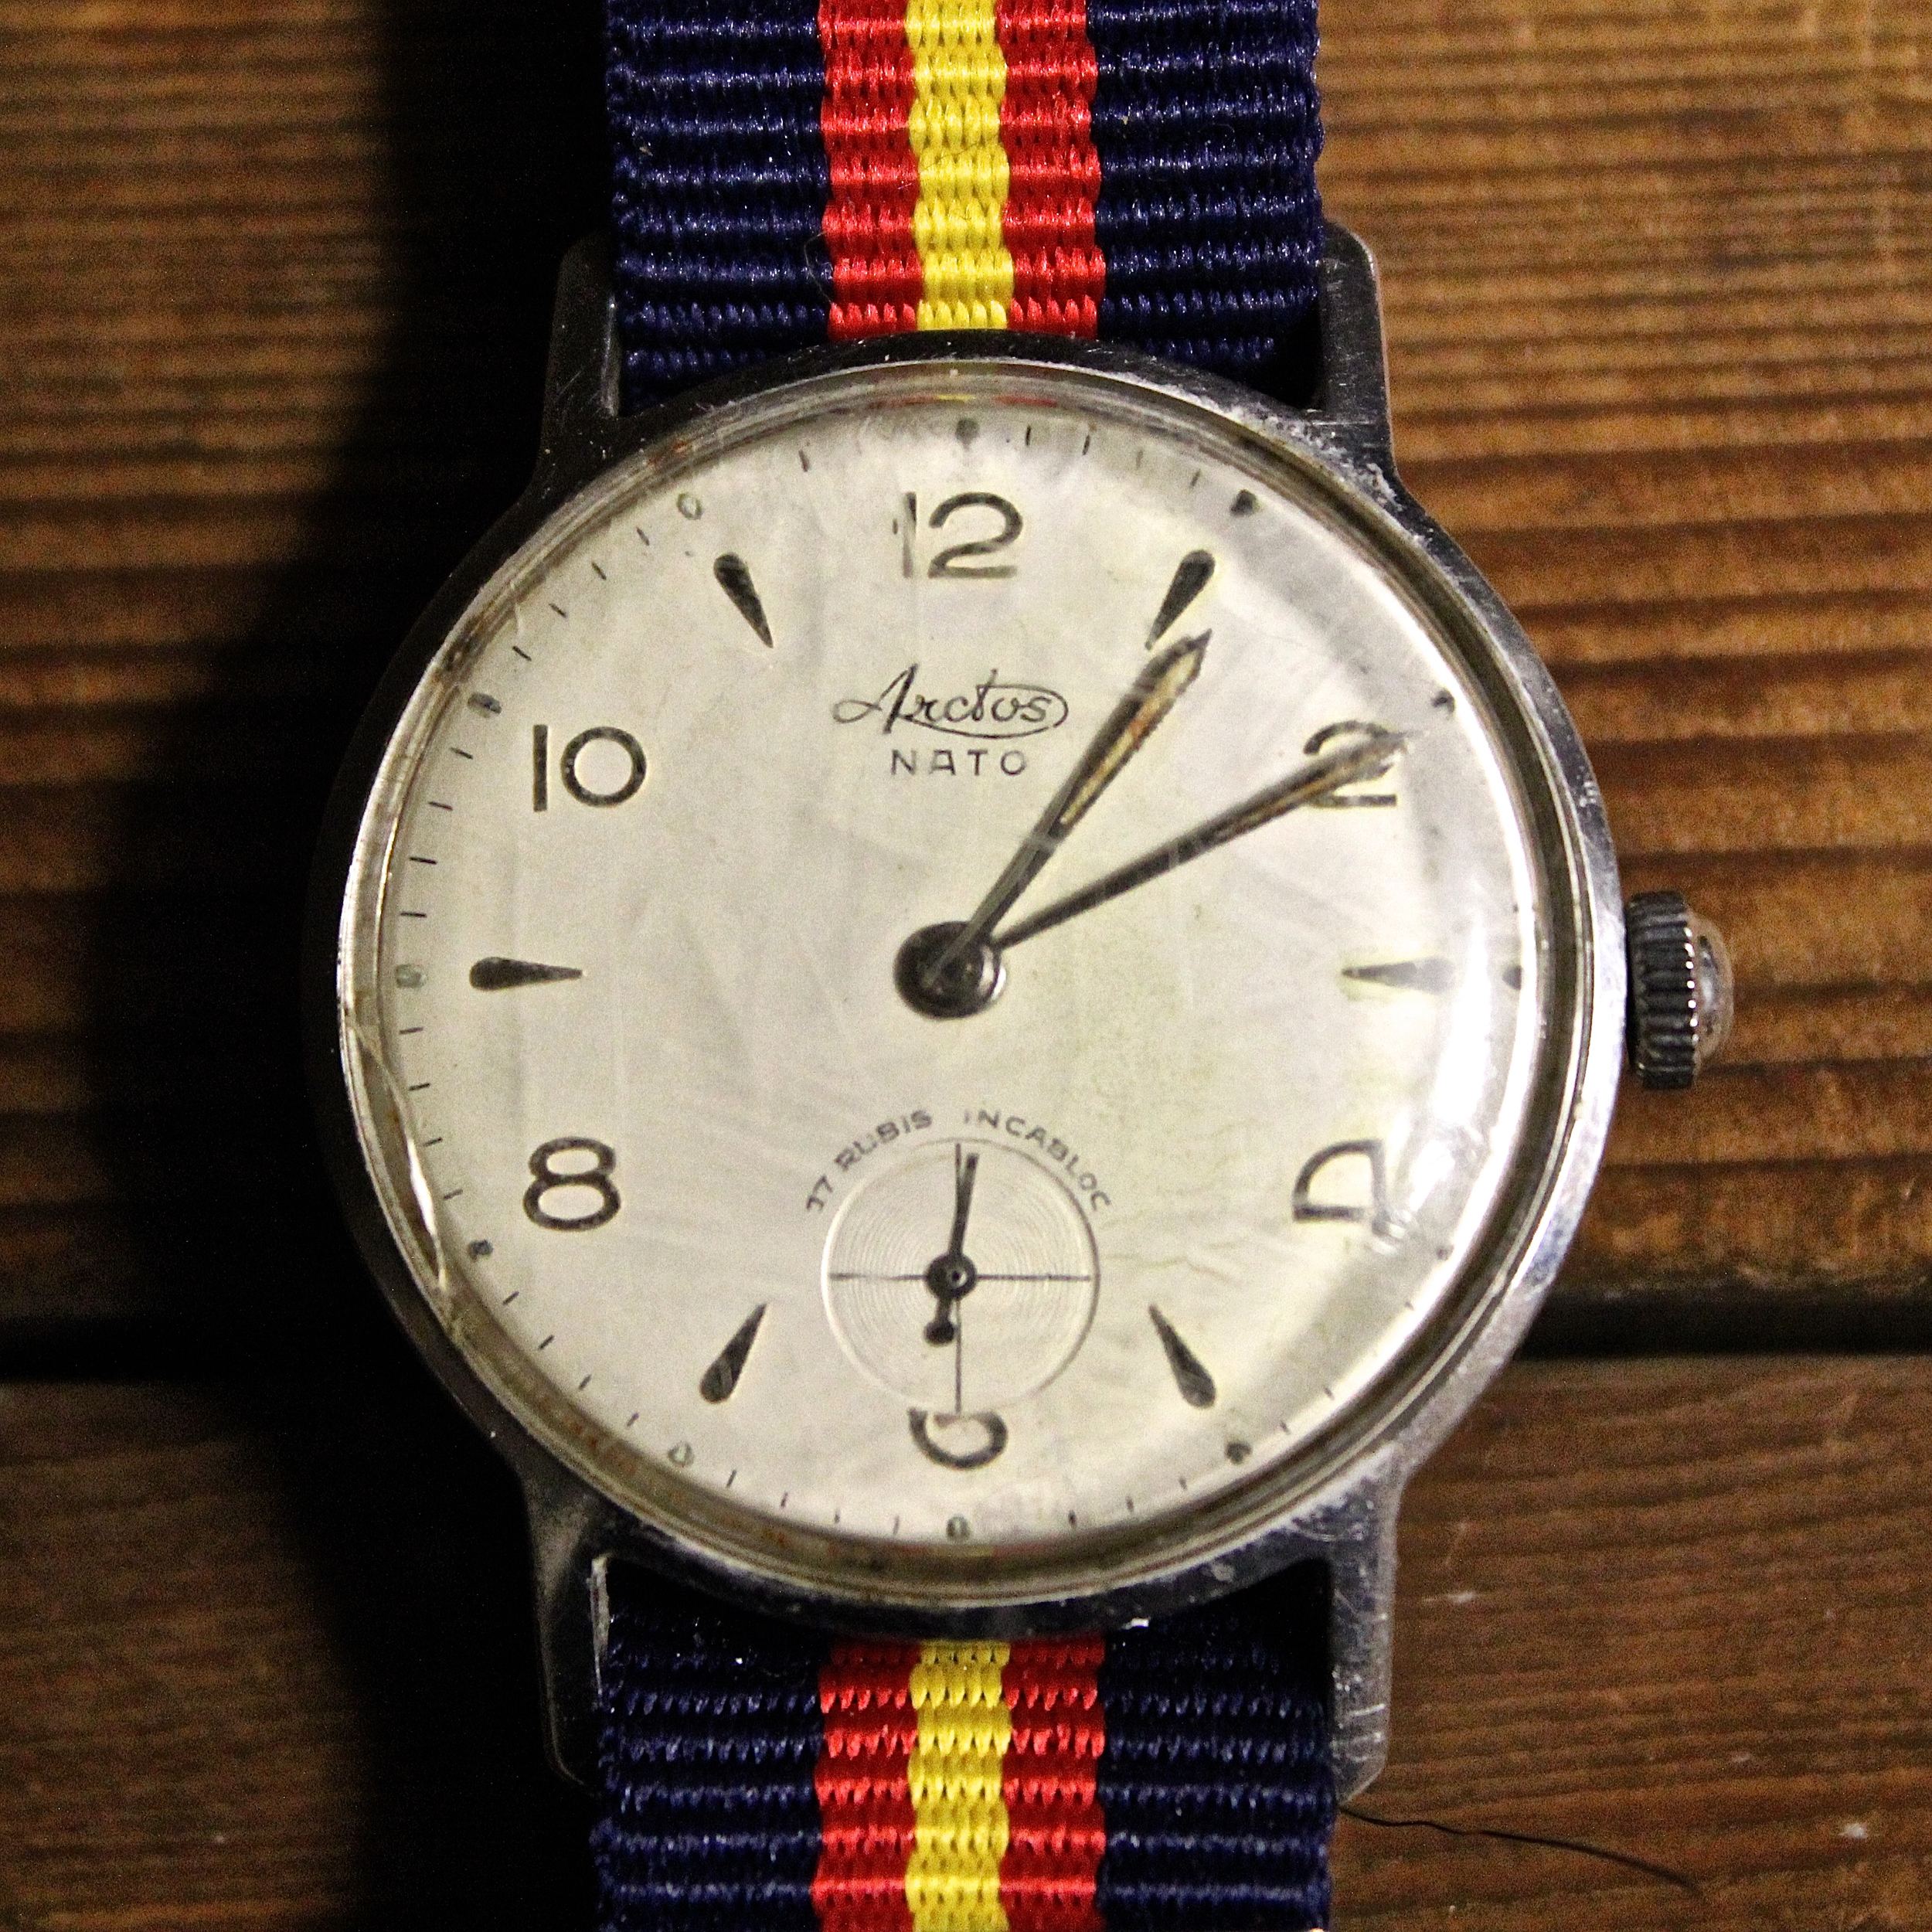 ARCTOS - Digital Quartz - Digital - Vintage Digital Watch - Digital-Watch .com